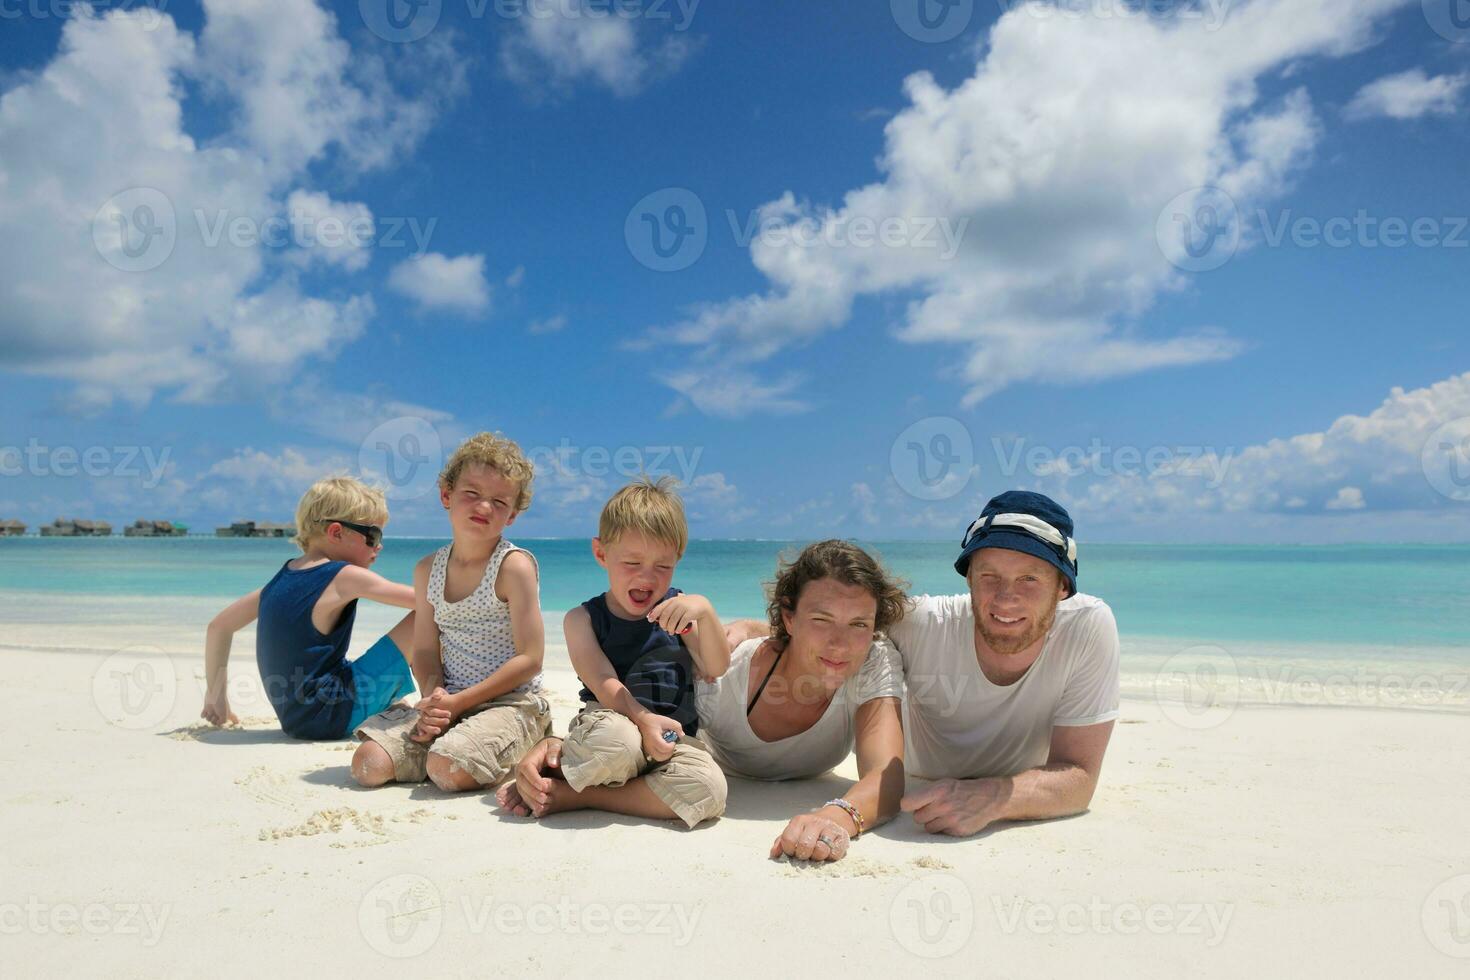 glückliche Familie im Urlaub foto